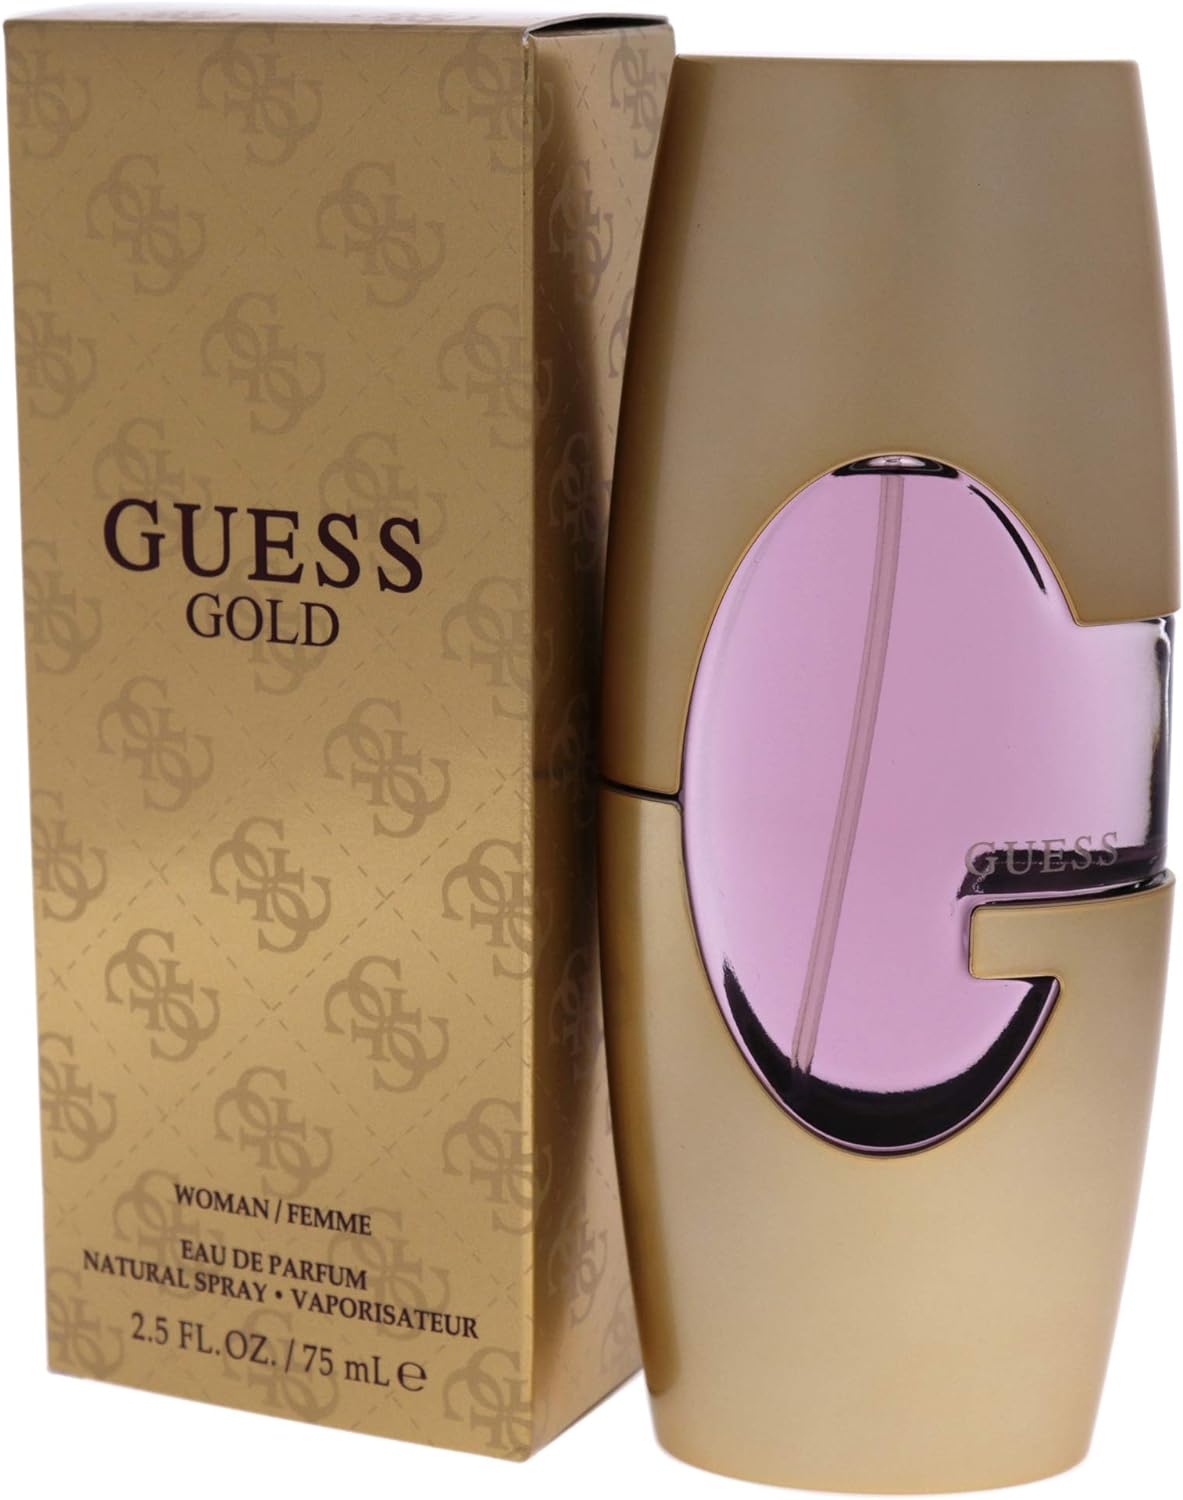 Guess Gold by Guess 75 ml Eau De Perfume Spray for Women